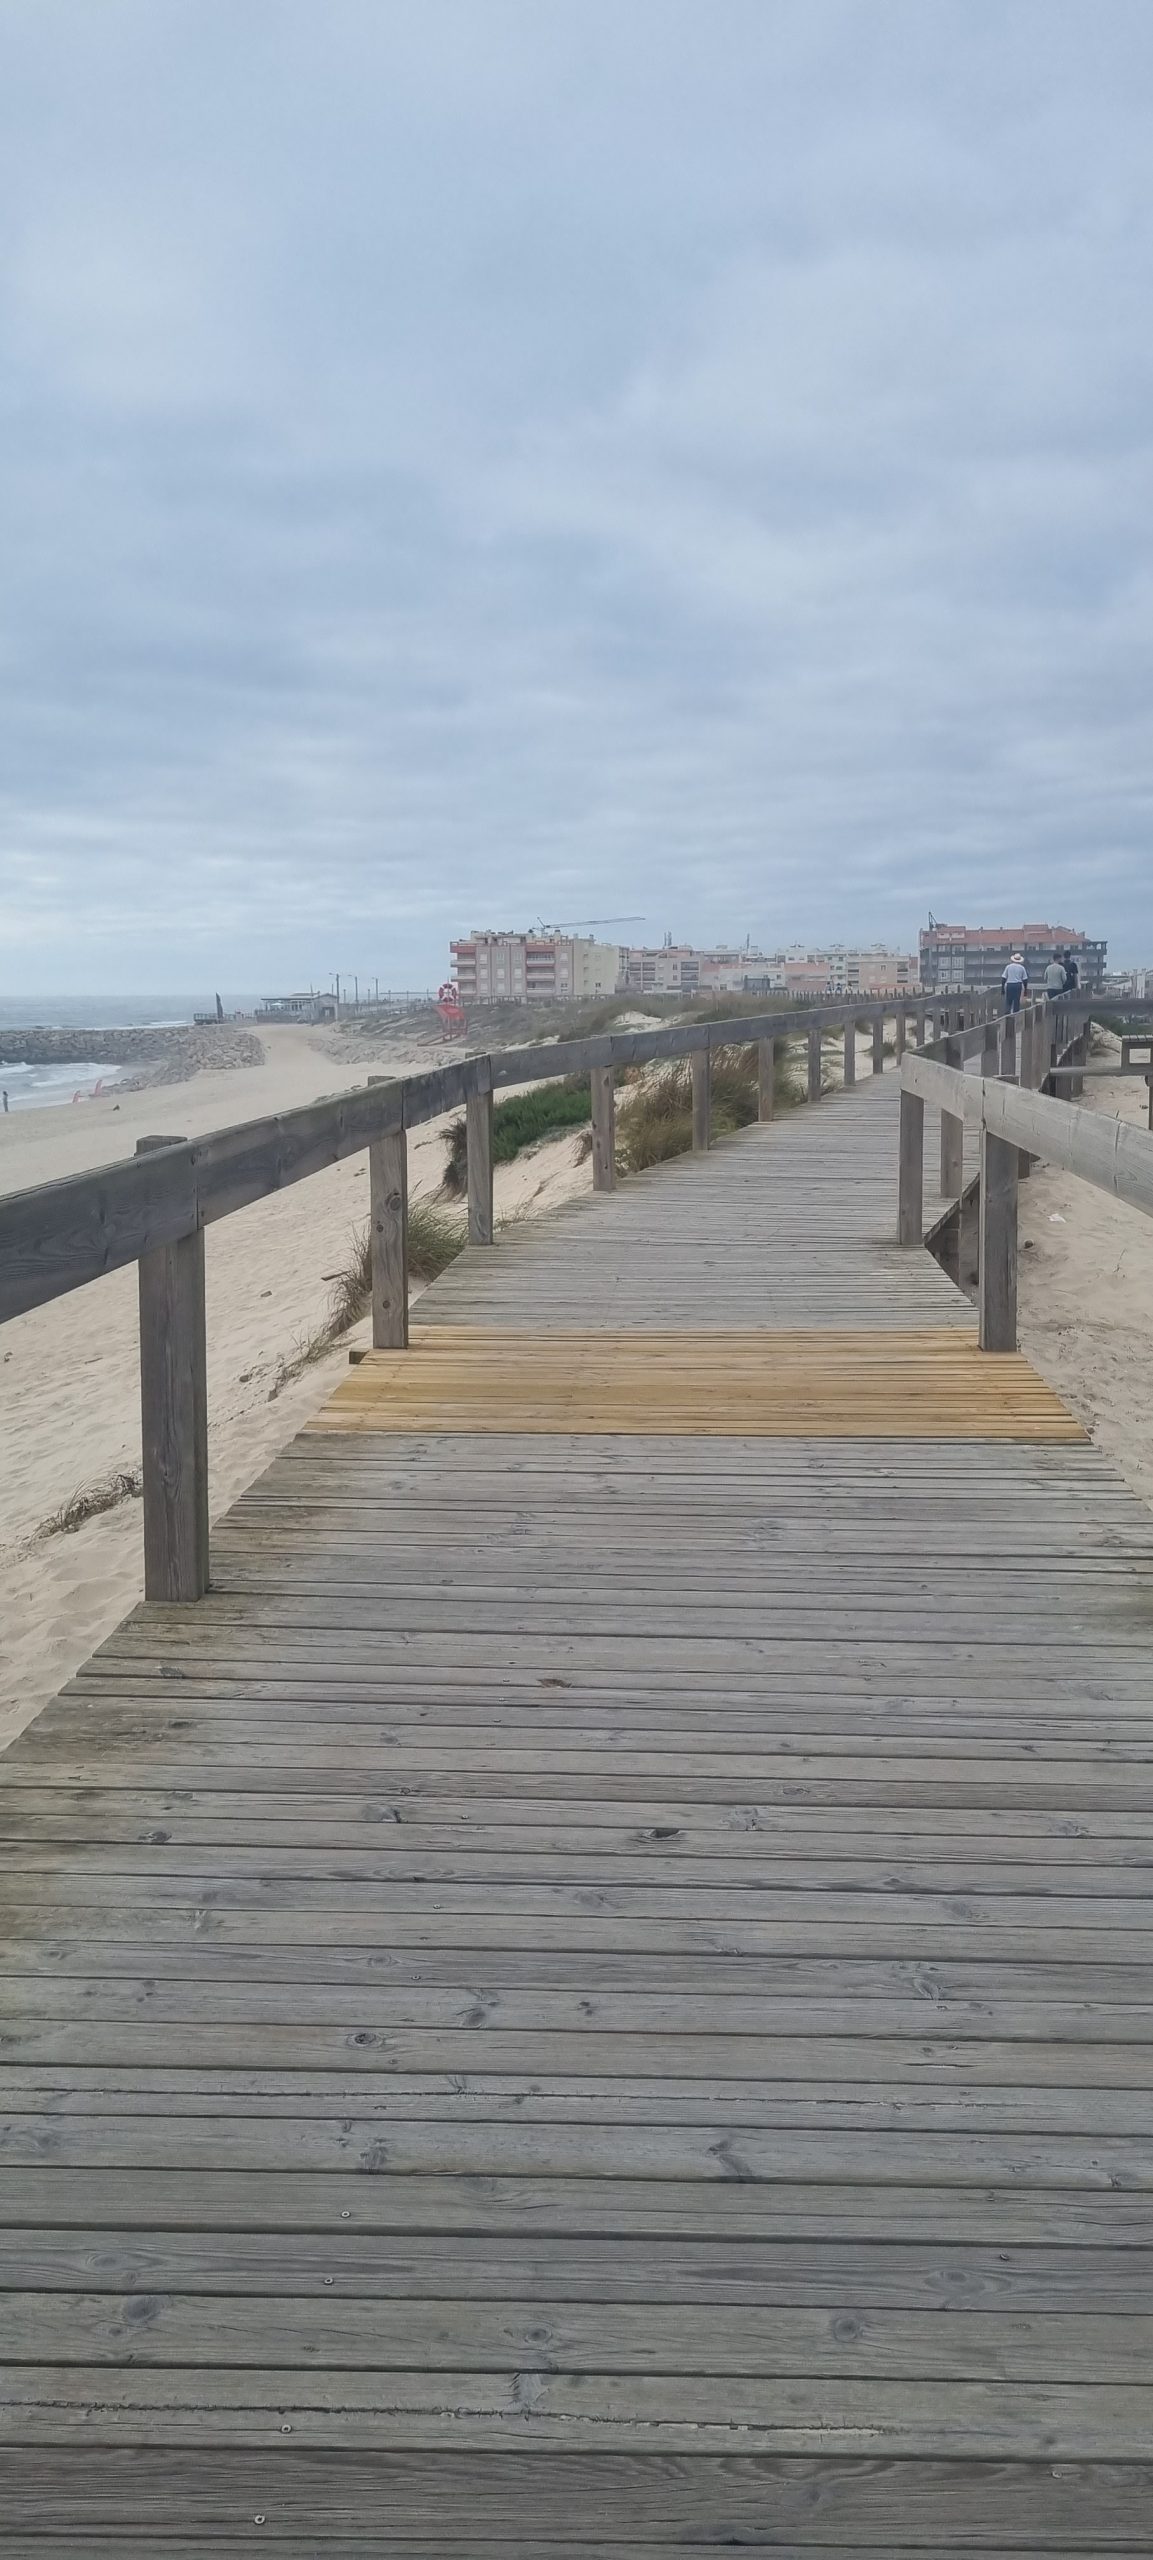 Pasarelas de Aveiro en la Praia de Vagueira. (Vagos)